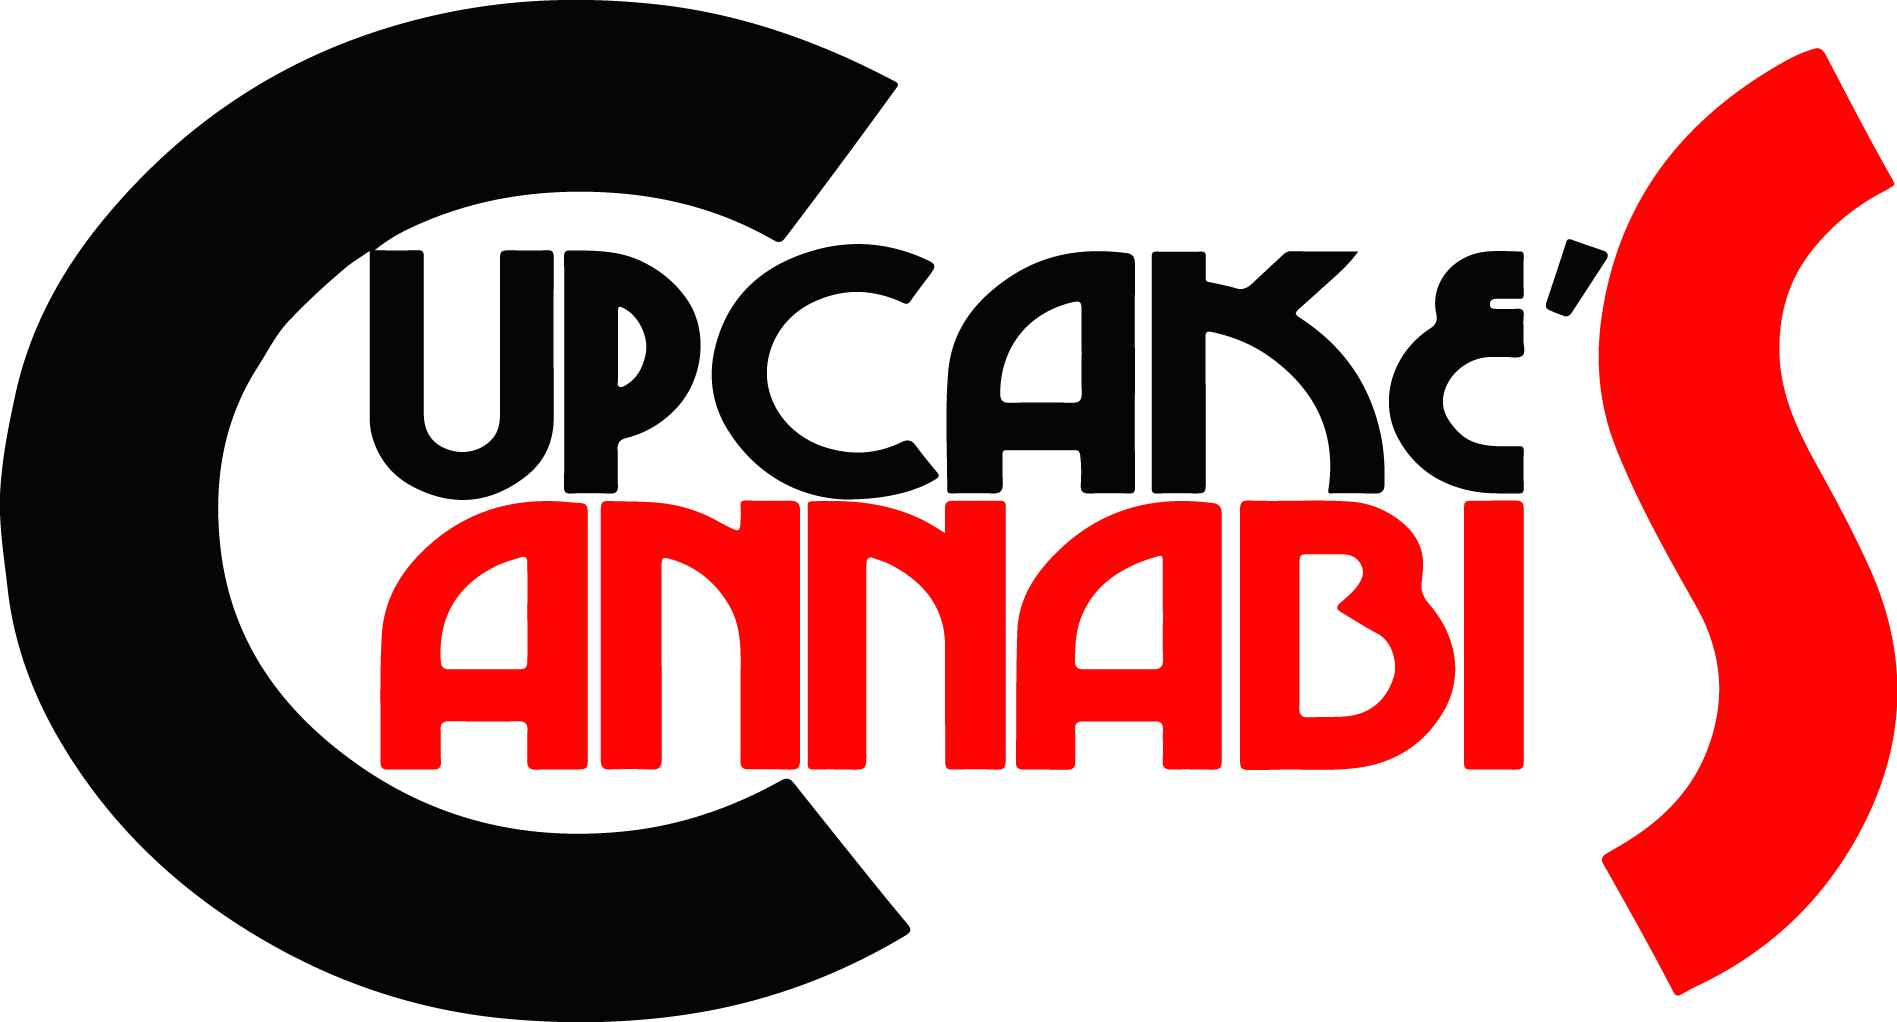 Cupcake's Cannabis